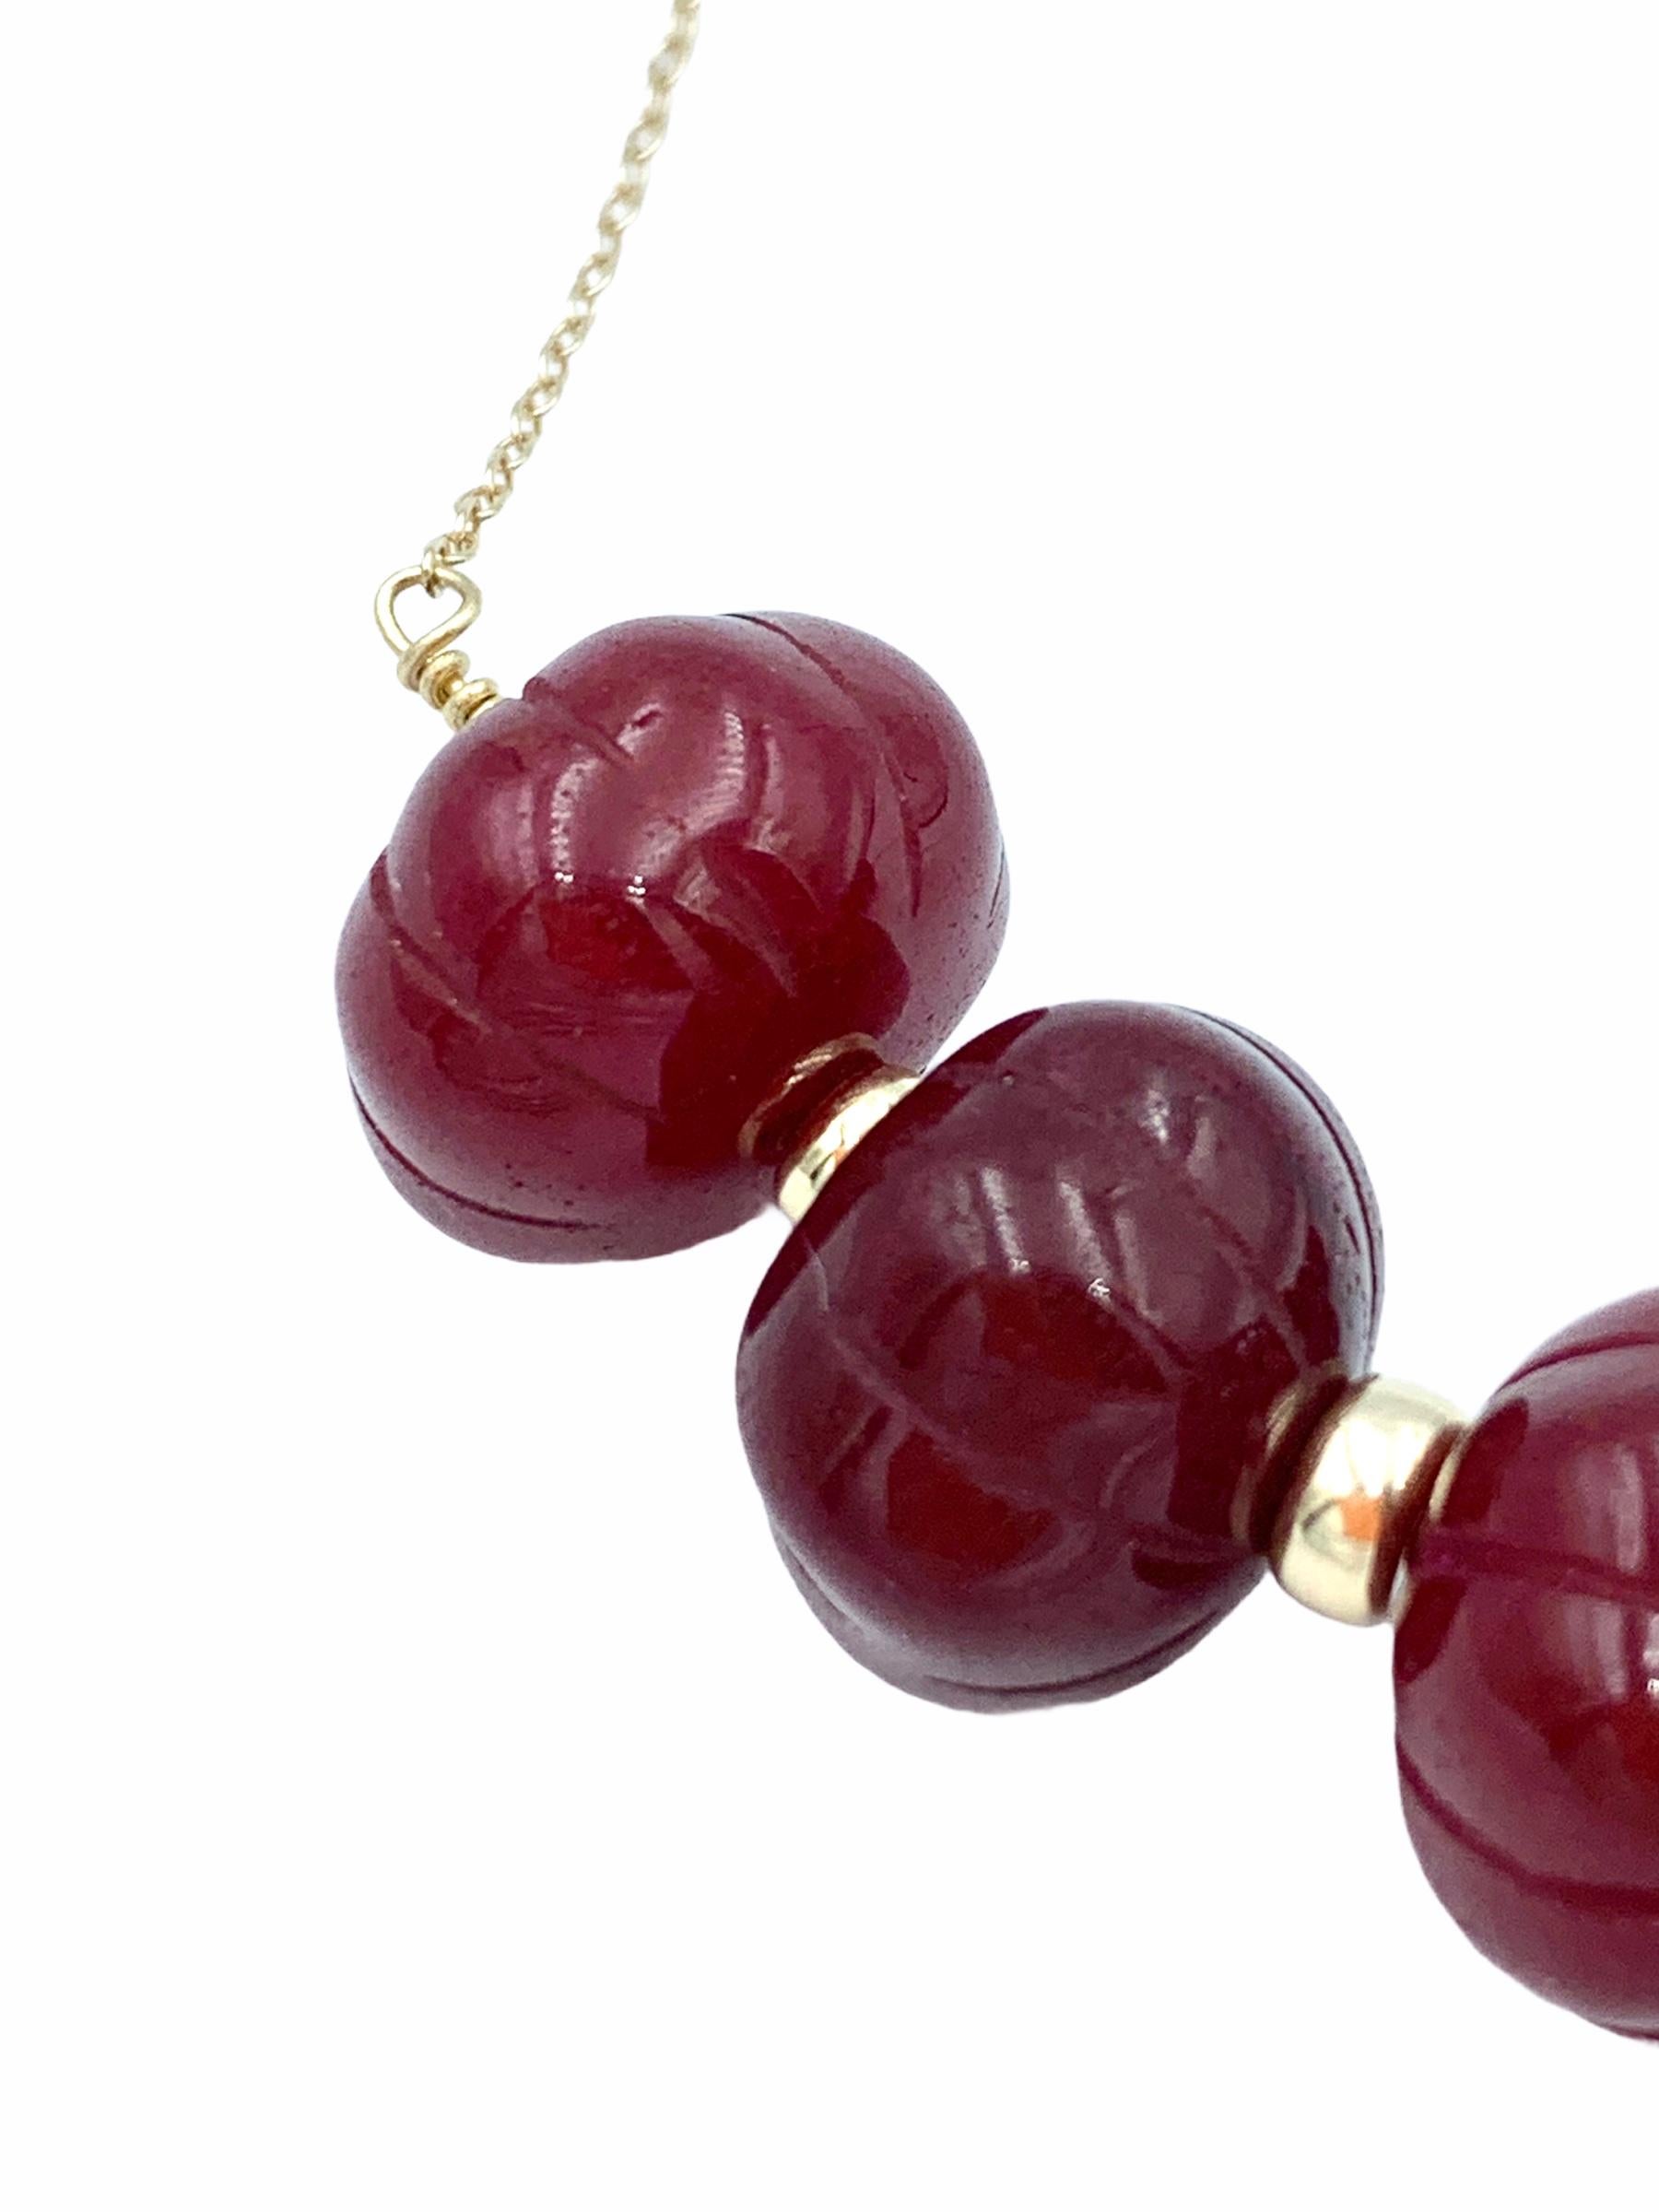 Fabriquées à la main en or jaune 14 carats, les perles suspendues en rubis sculpté sont enfilées avec un fil d'or massif et graduées sur une délicate chaîne à câble de 1,3 mm. Les teintes rouges intenses sont portées par les perles difformes avec